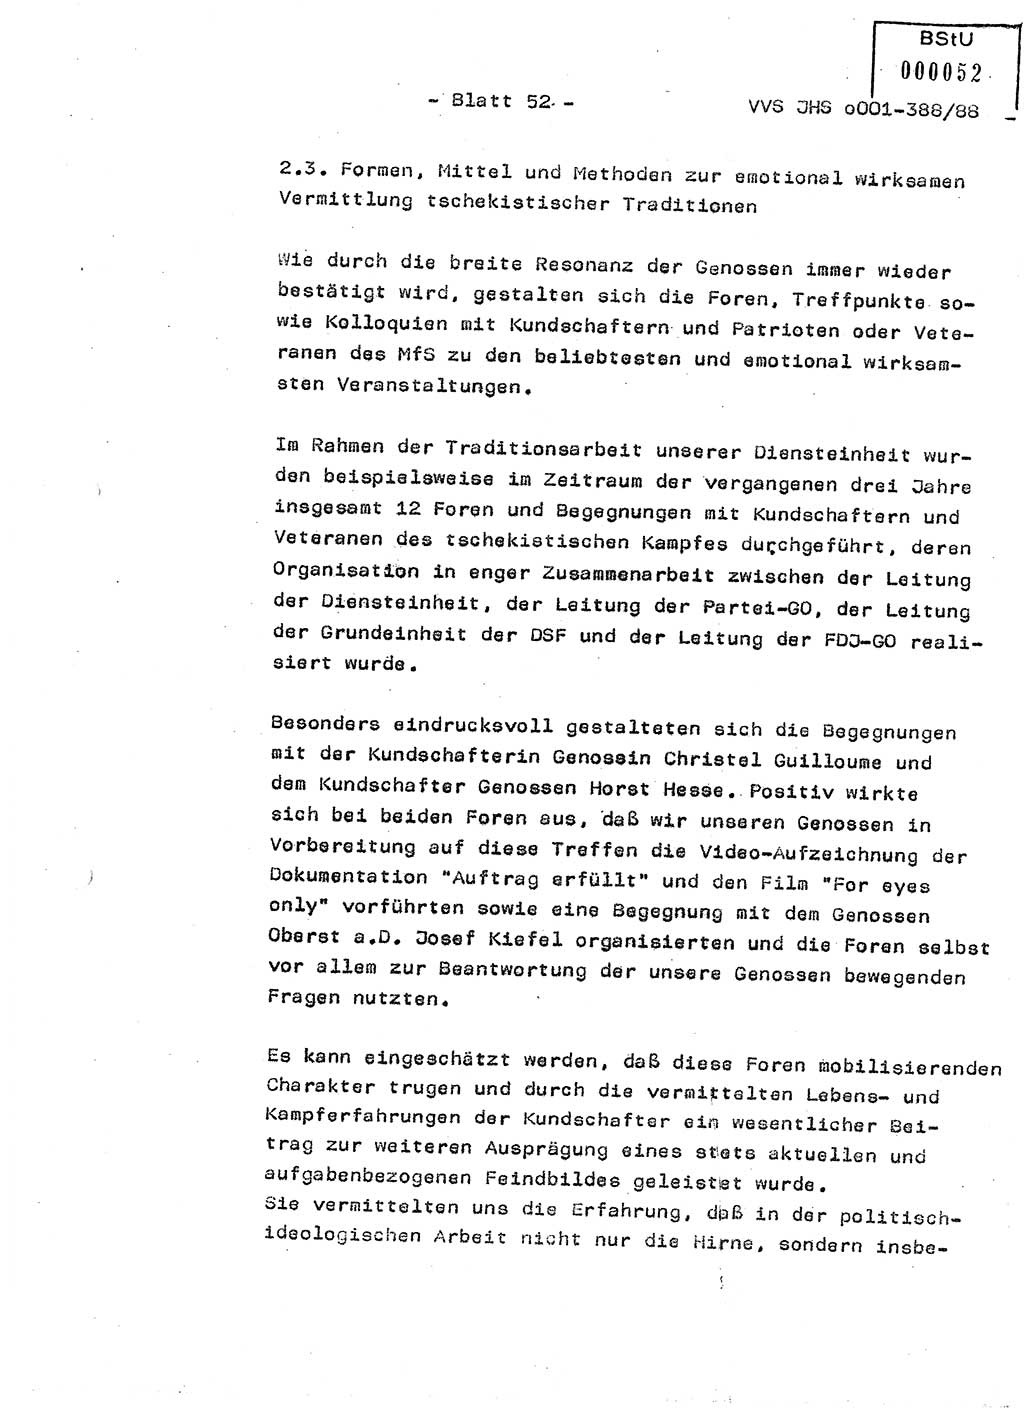 Diplomarbeit Hauptmann Heinz Brixel (Abt. ⅩⅣ), Ministerium für Staatssicherheit (MfS) [Deutsche Demokratische Republik (DDR)], Juristische Hochschule (JHS), Vertrauliche Verschlußsache (VVS) o001-388/88, Potsdam 1988, Blatt 52 (Dipl.-Arb. MfS DDR JHS VVS o001-388/88 1988, Bl. 52)